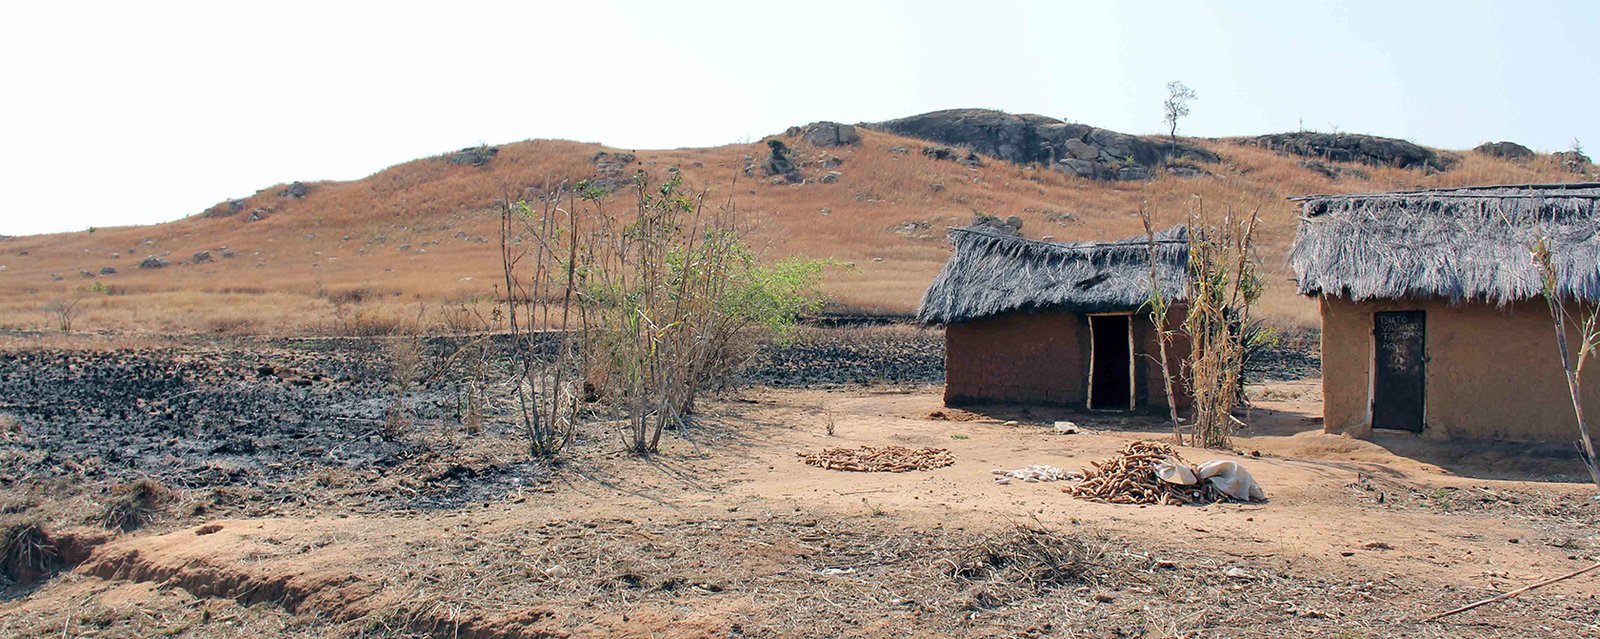 Häuser eines Dorfes im Süden in trockener Savanne